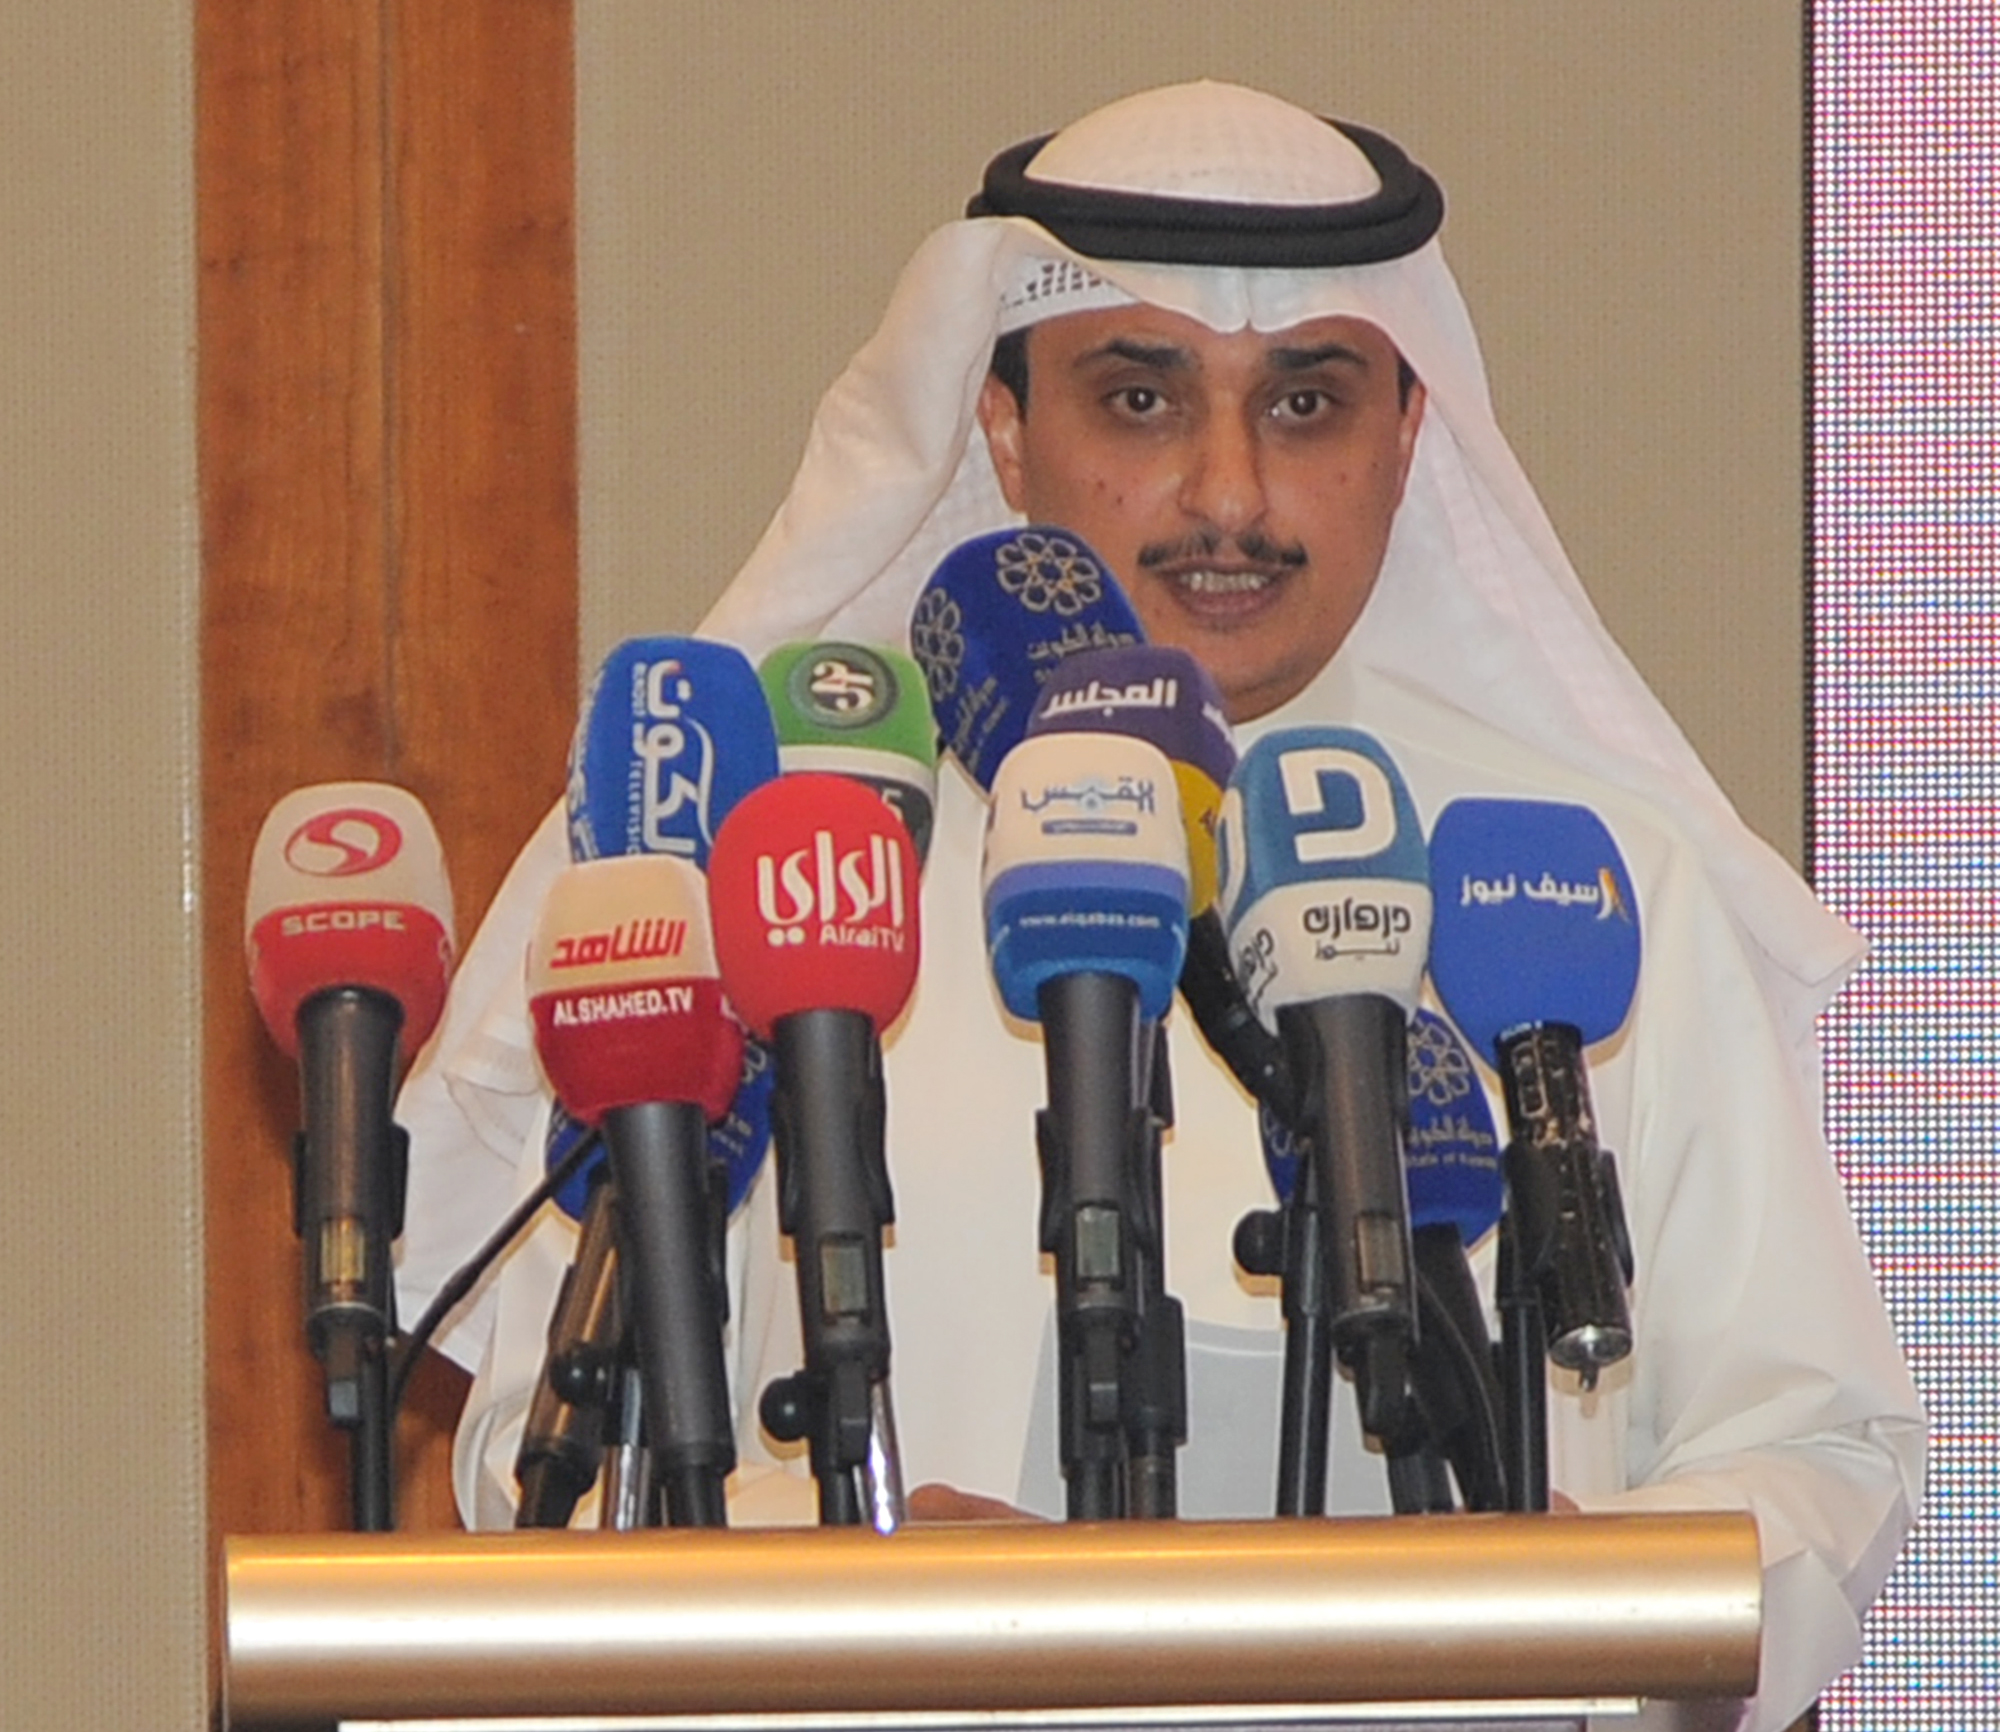 Director General Eng. Ahmad Al-Manfohi delivers his speech